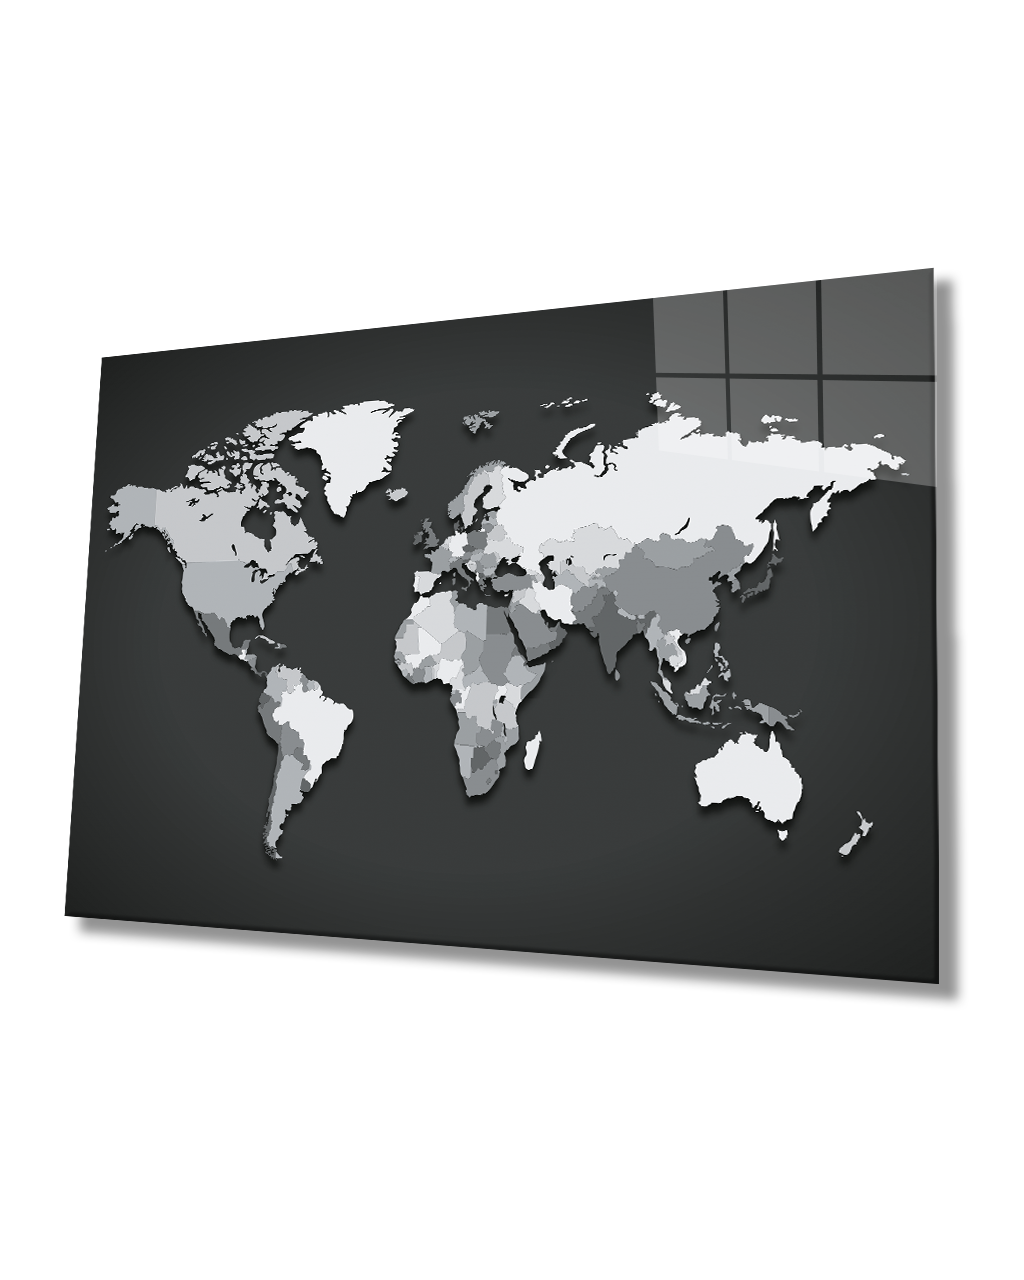 Siyah Beyaz Dünya Haritası 4mm Dayanıklı Cam Tablo Temperli Cam, World Map